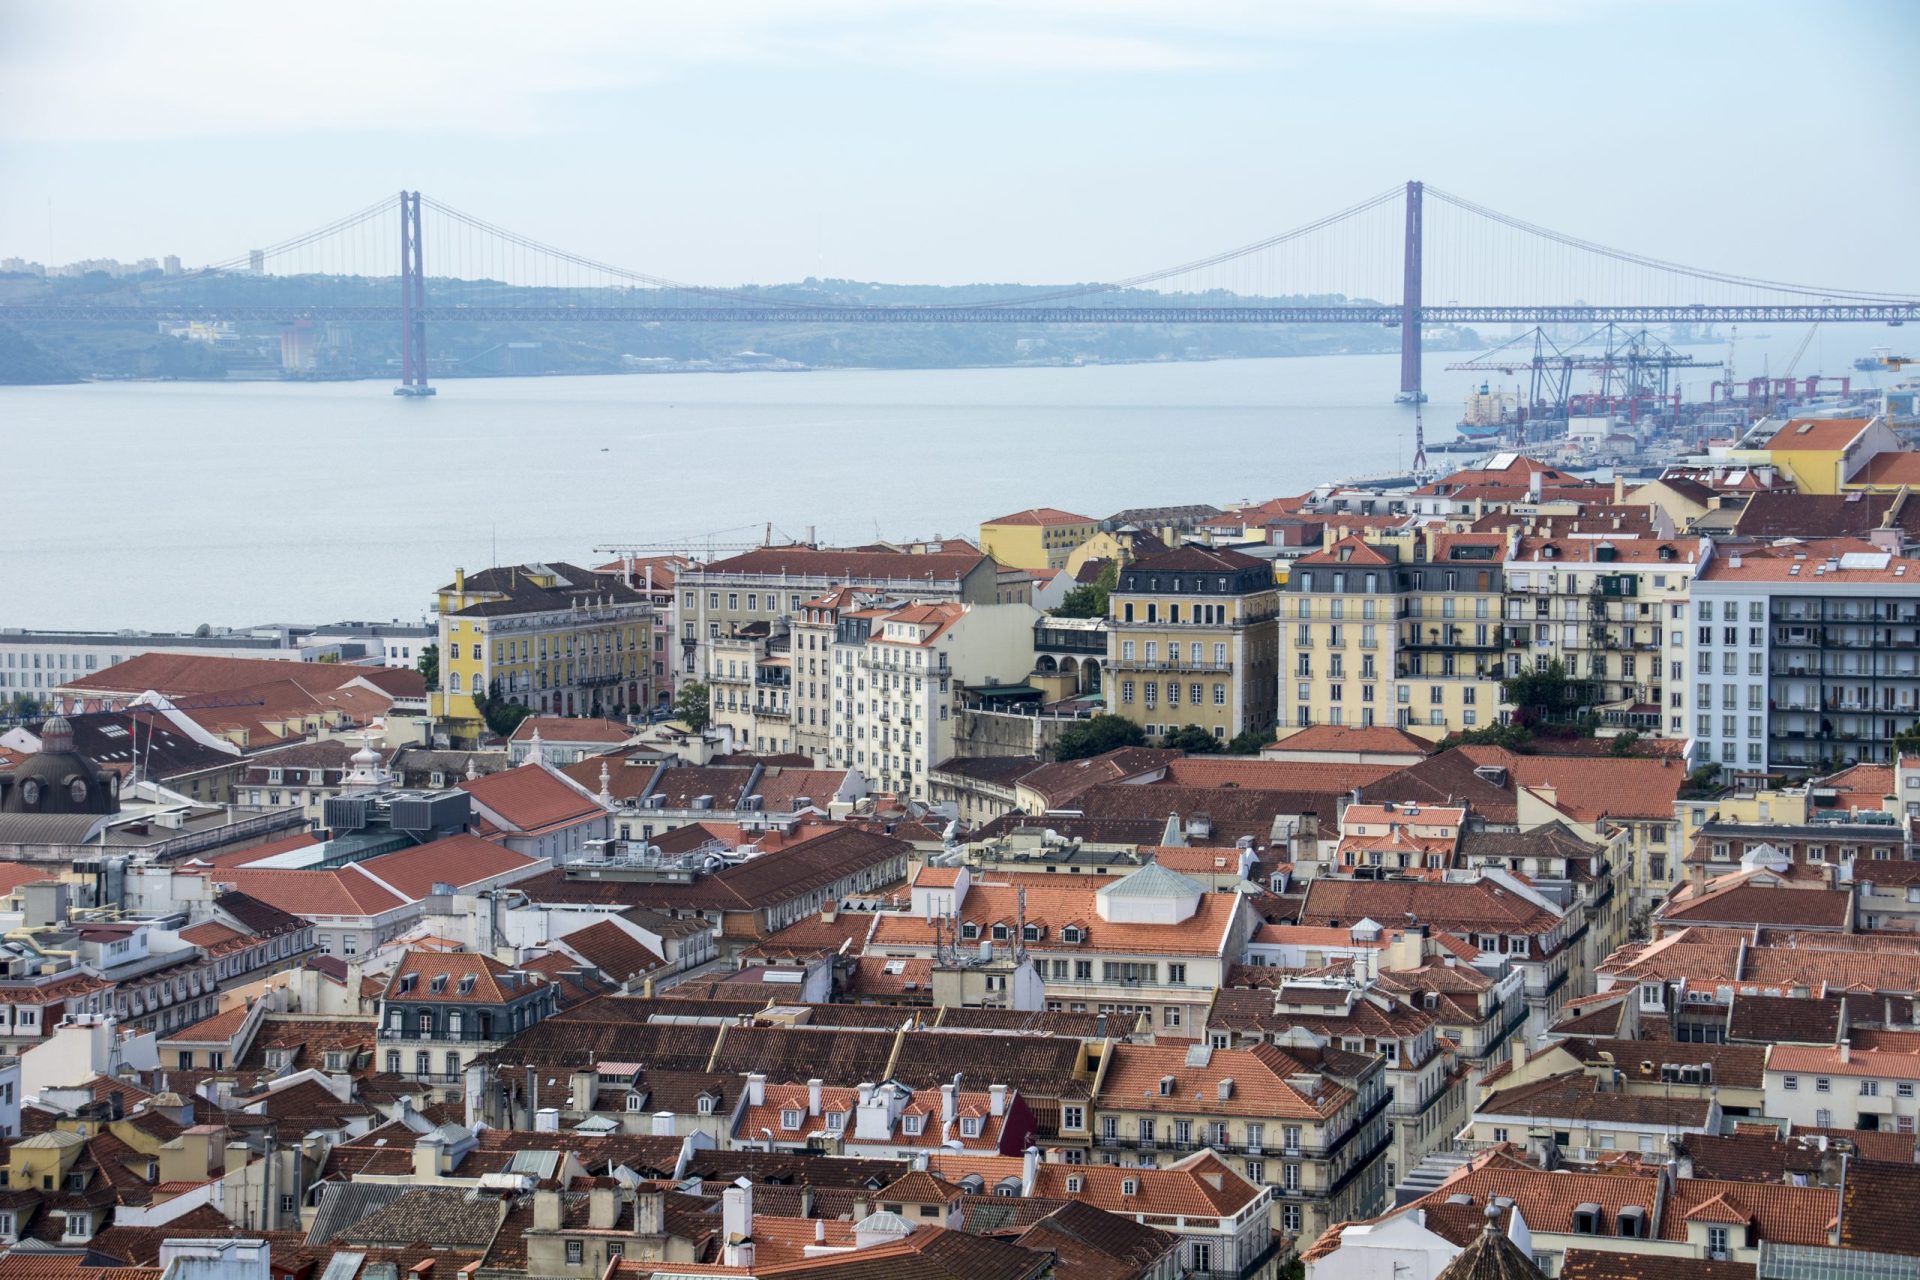 Oferta continua a subir e até 2020 vão surgir 120 novos hotéis em Portugal